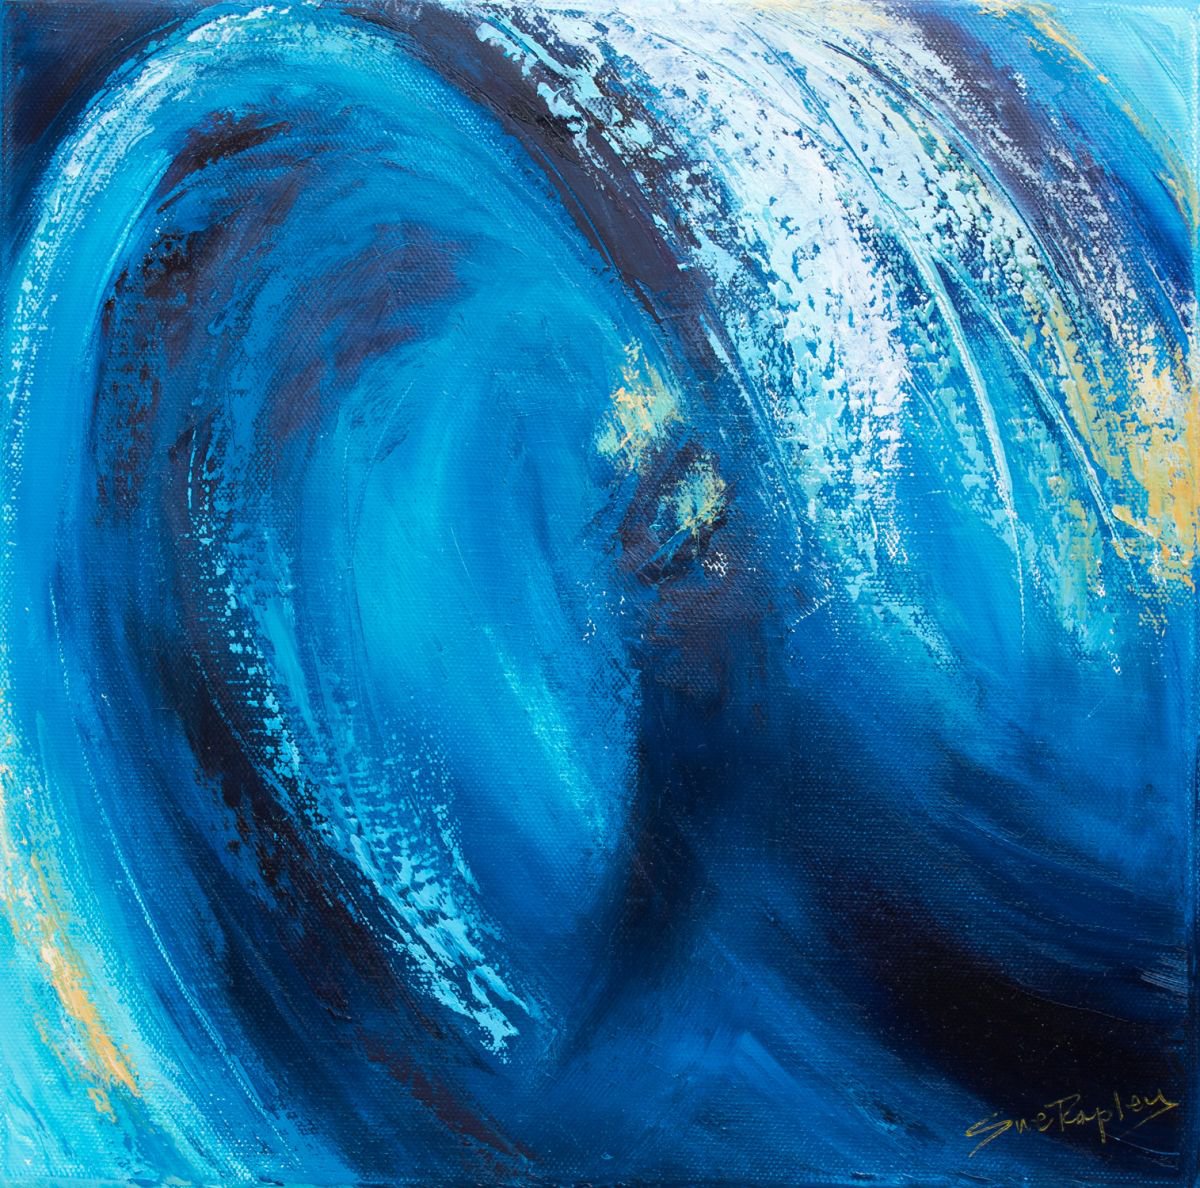 Rolling Wave II by Sue Rapley